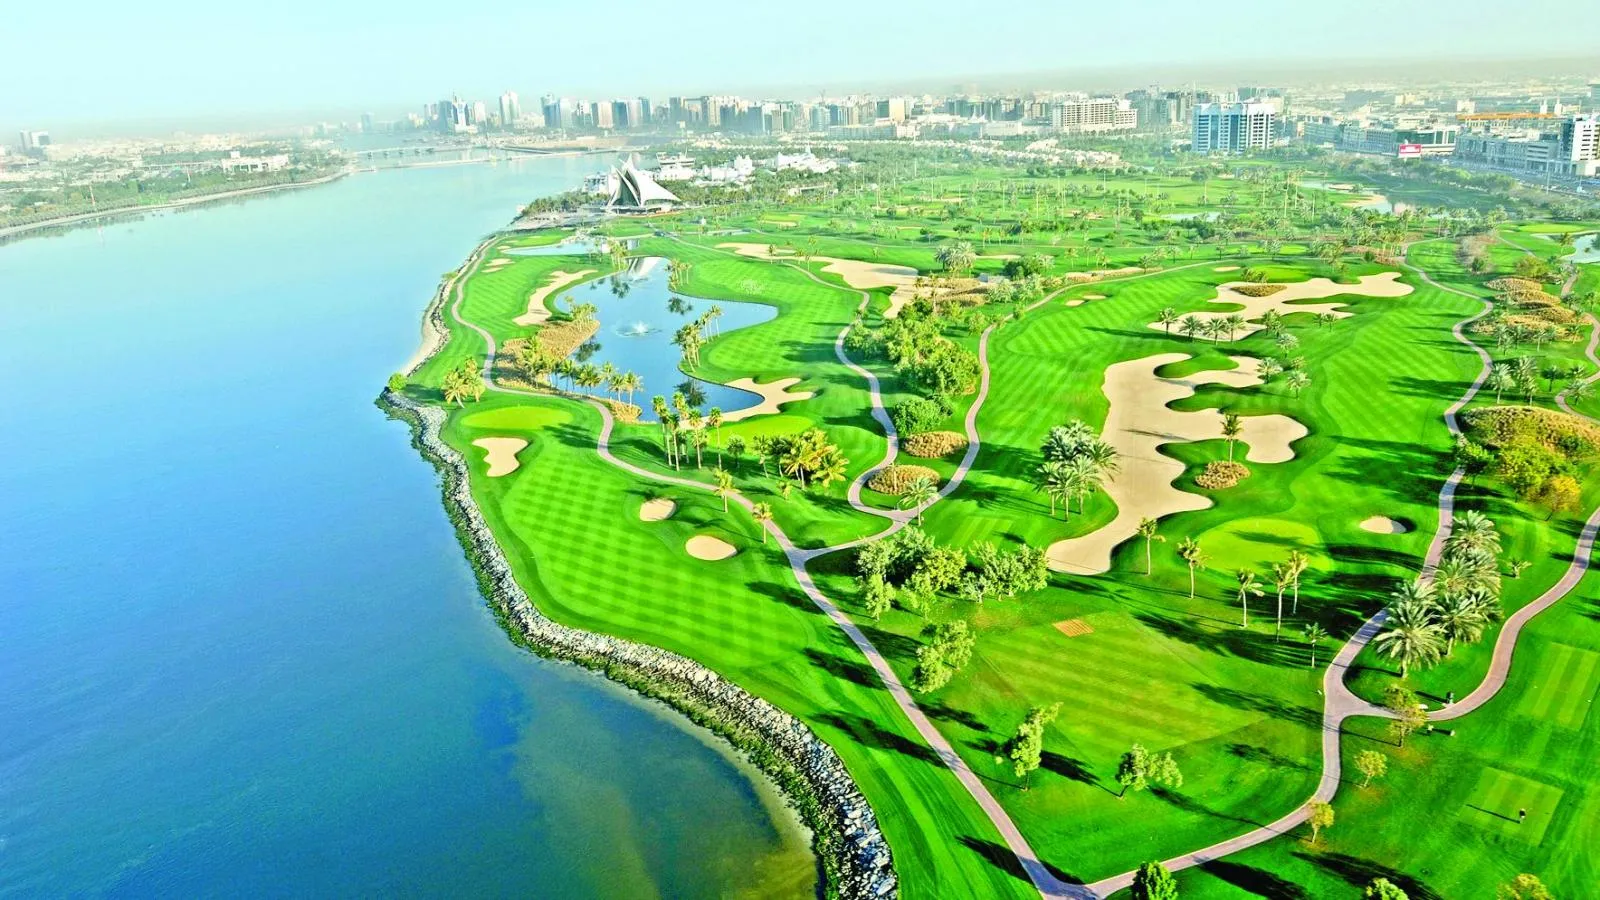 Dubai Creek Golf & Yacht Club - идеальное место для любителей гольфа и яхтинга в ОАЭ.